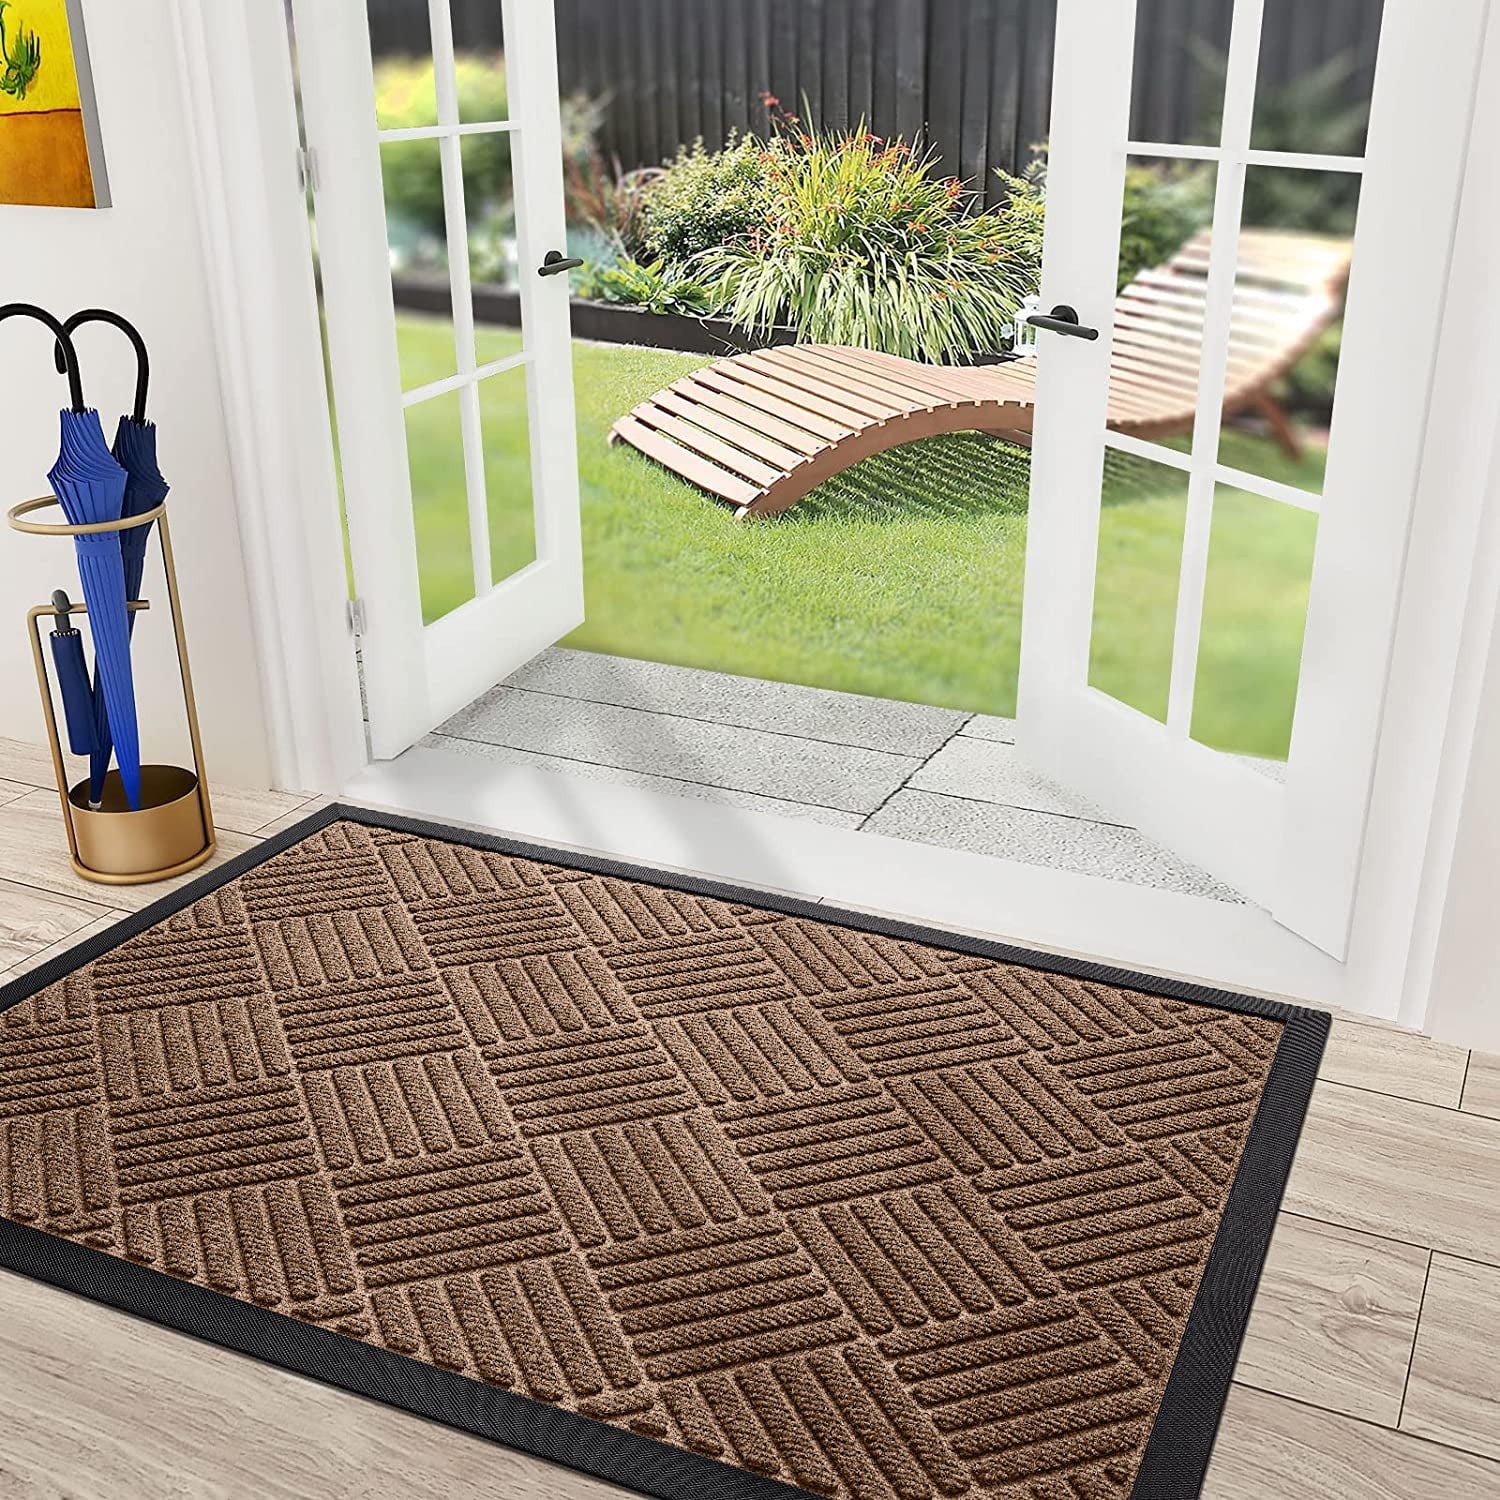 Ruiya Durable Outdoor indoor Welcome door mats for home entrance